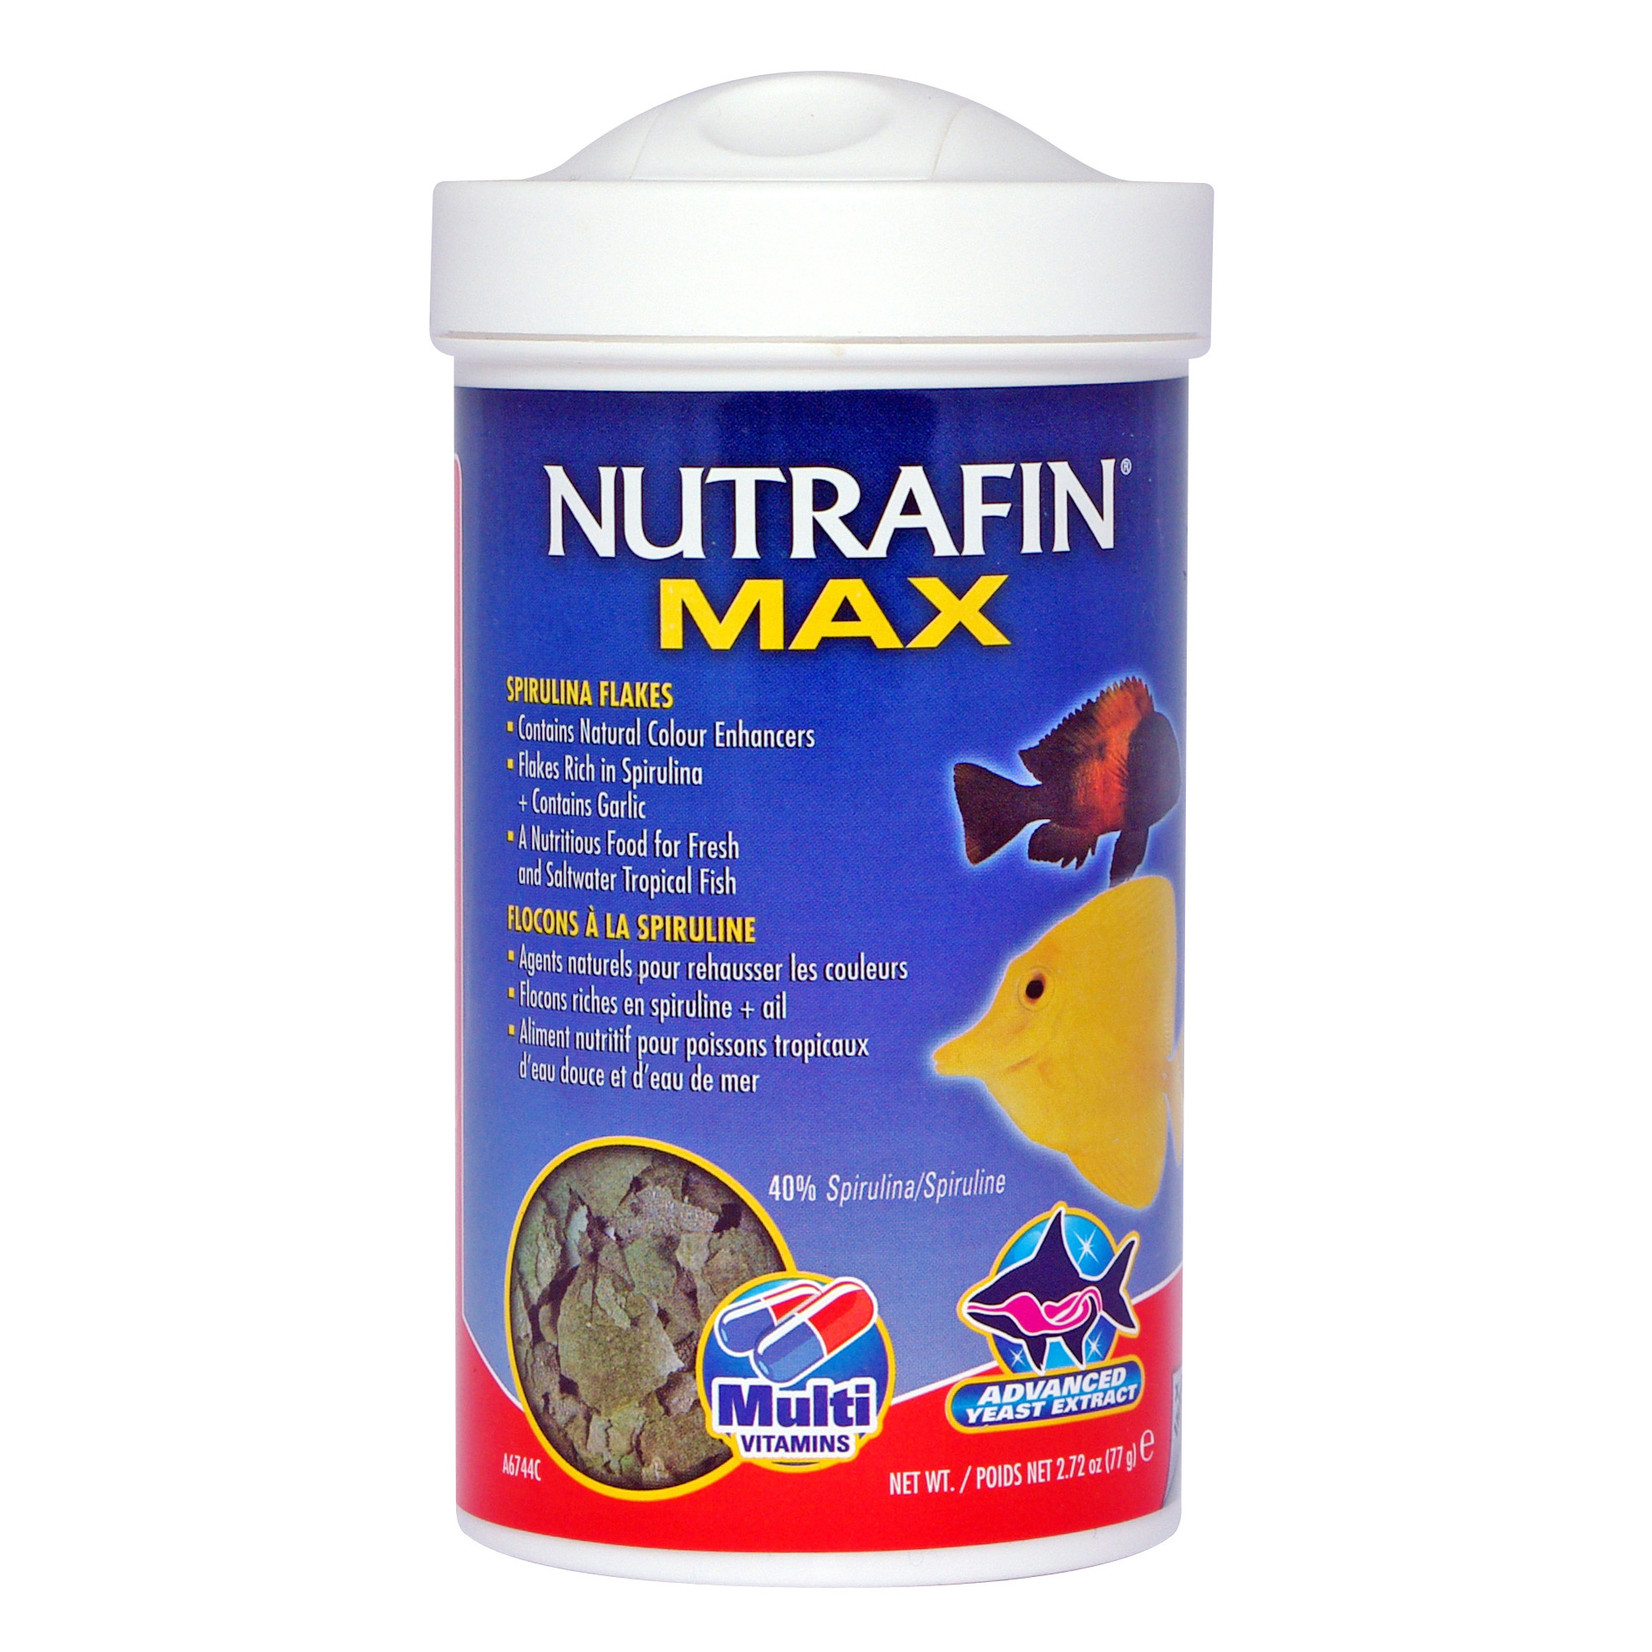 NUTRAFIN NFM Spirulina Flakes, 77g (2.72oz)